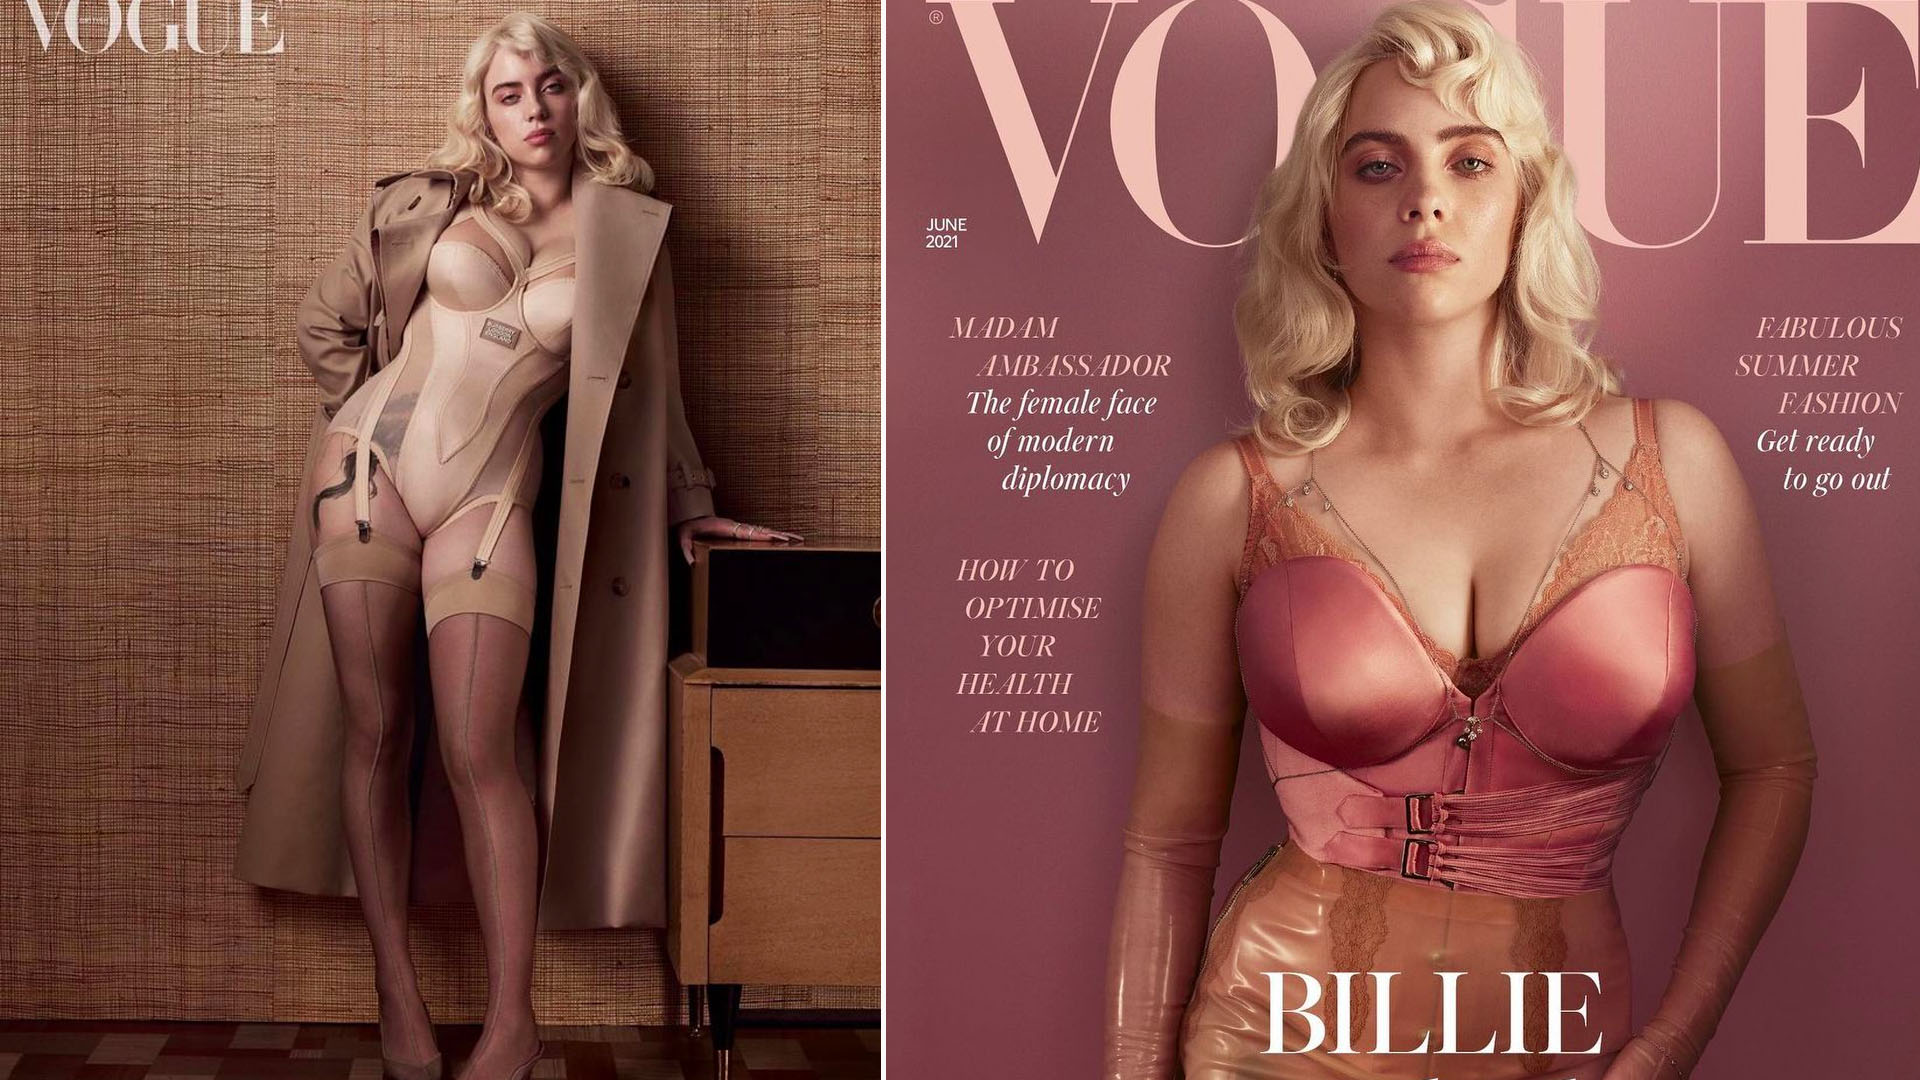 Fans are loving Billie Eilish’s new stunning Lingerie cover shoot